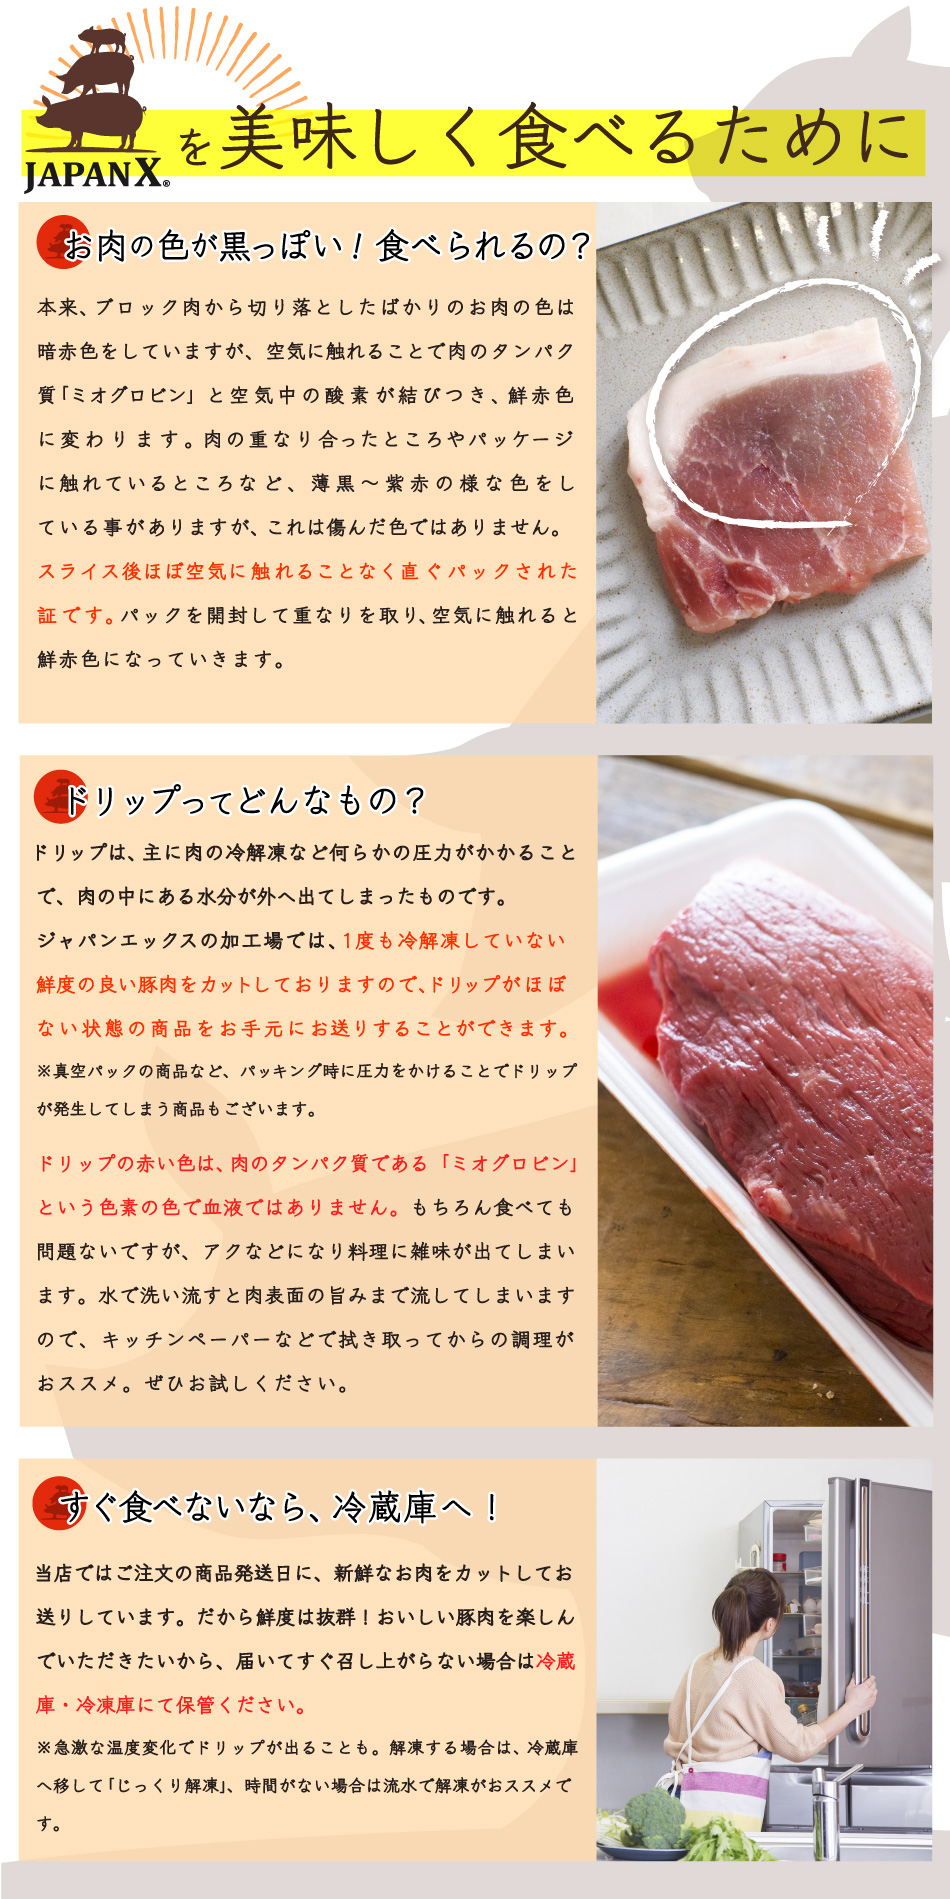 JAPAN X,ジャパンエックス,JAPAN X,焼き肉・BBQセット,ジャパンエックスを美味しく食べるために,肉の色が変,食べられるの,食べていいの,ドリップってなに？,ドリップは血ではない！,届いてすぐ食べないなら冷蔵庫へ,